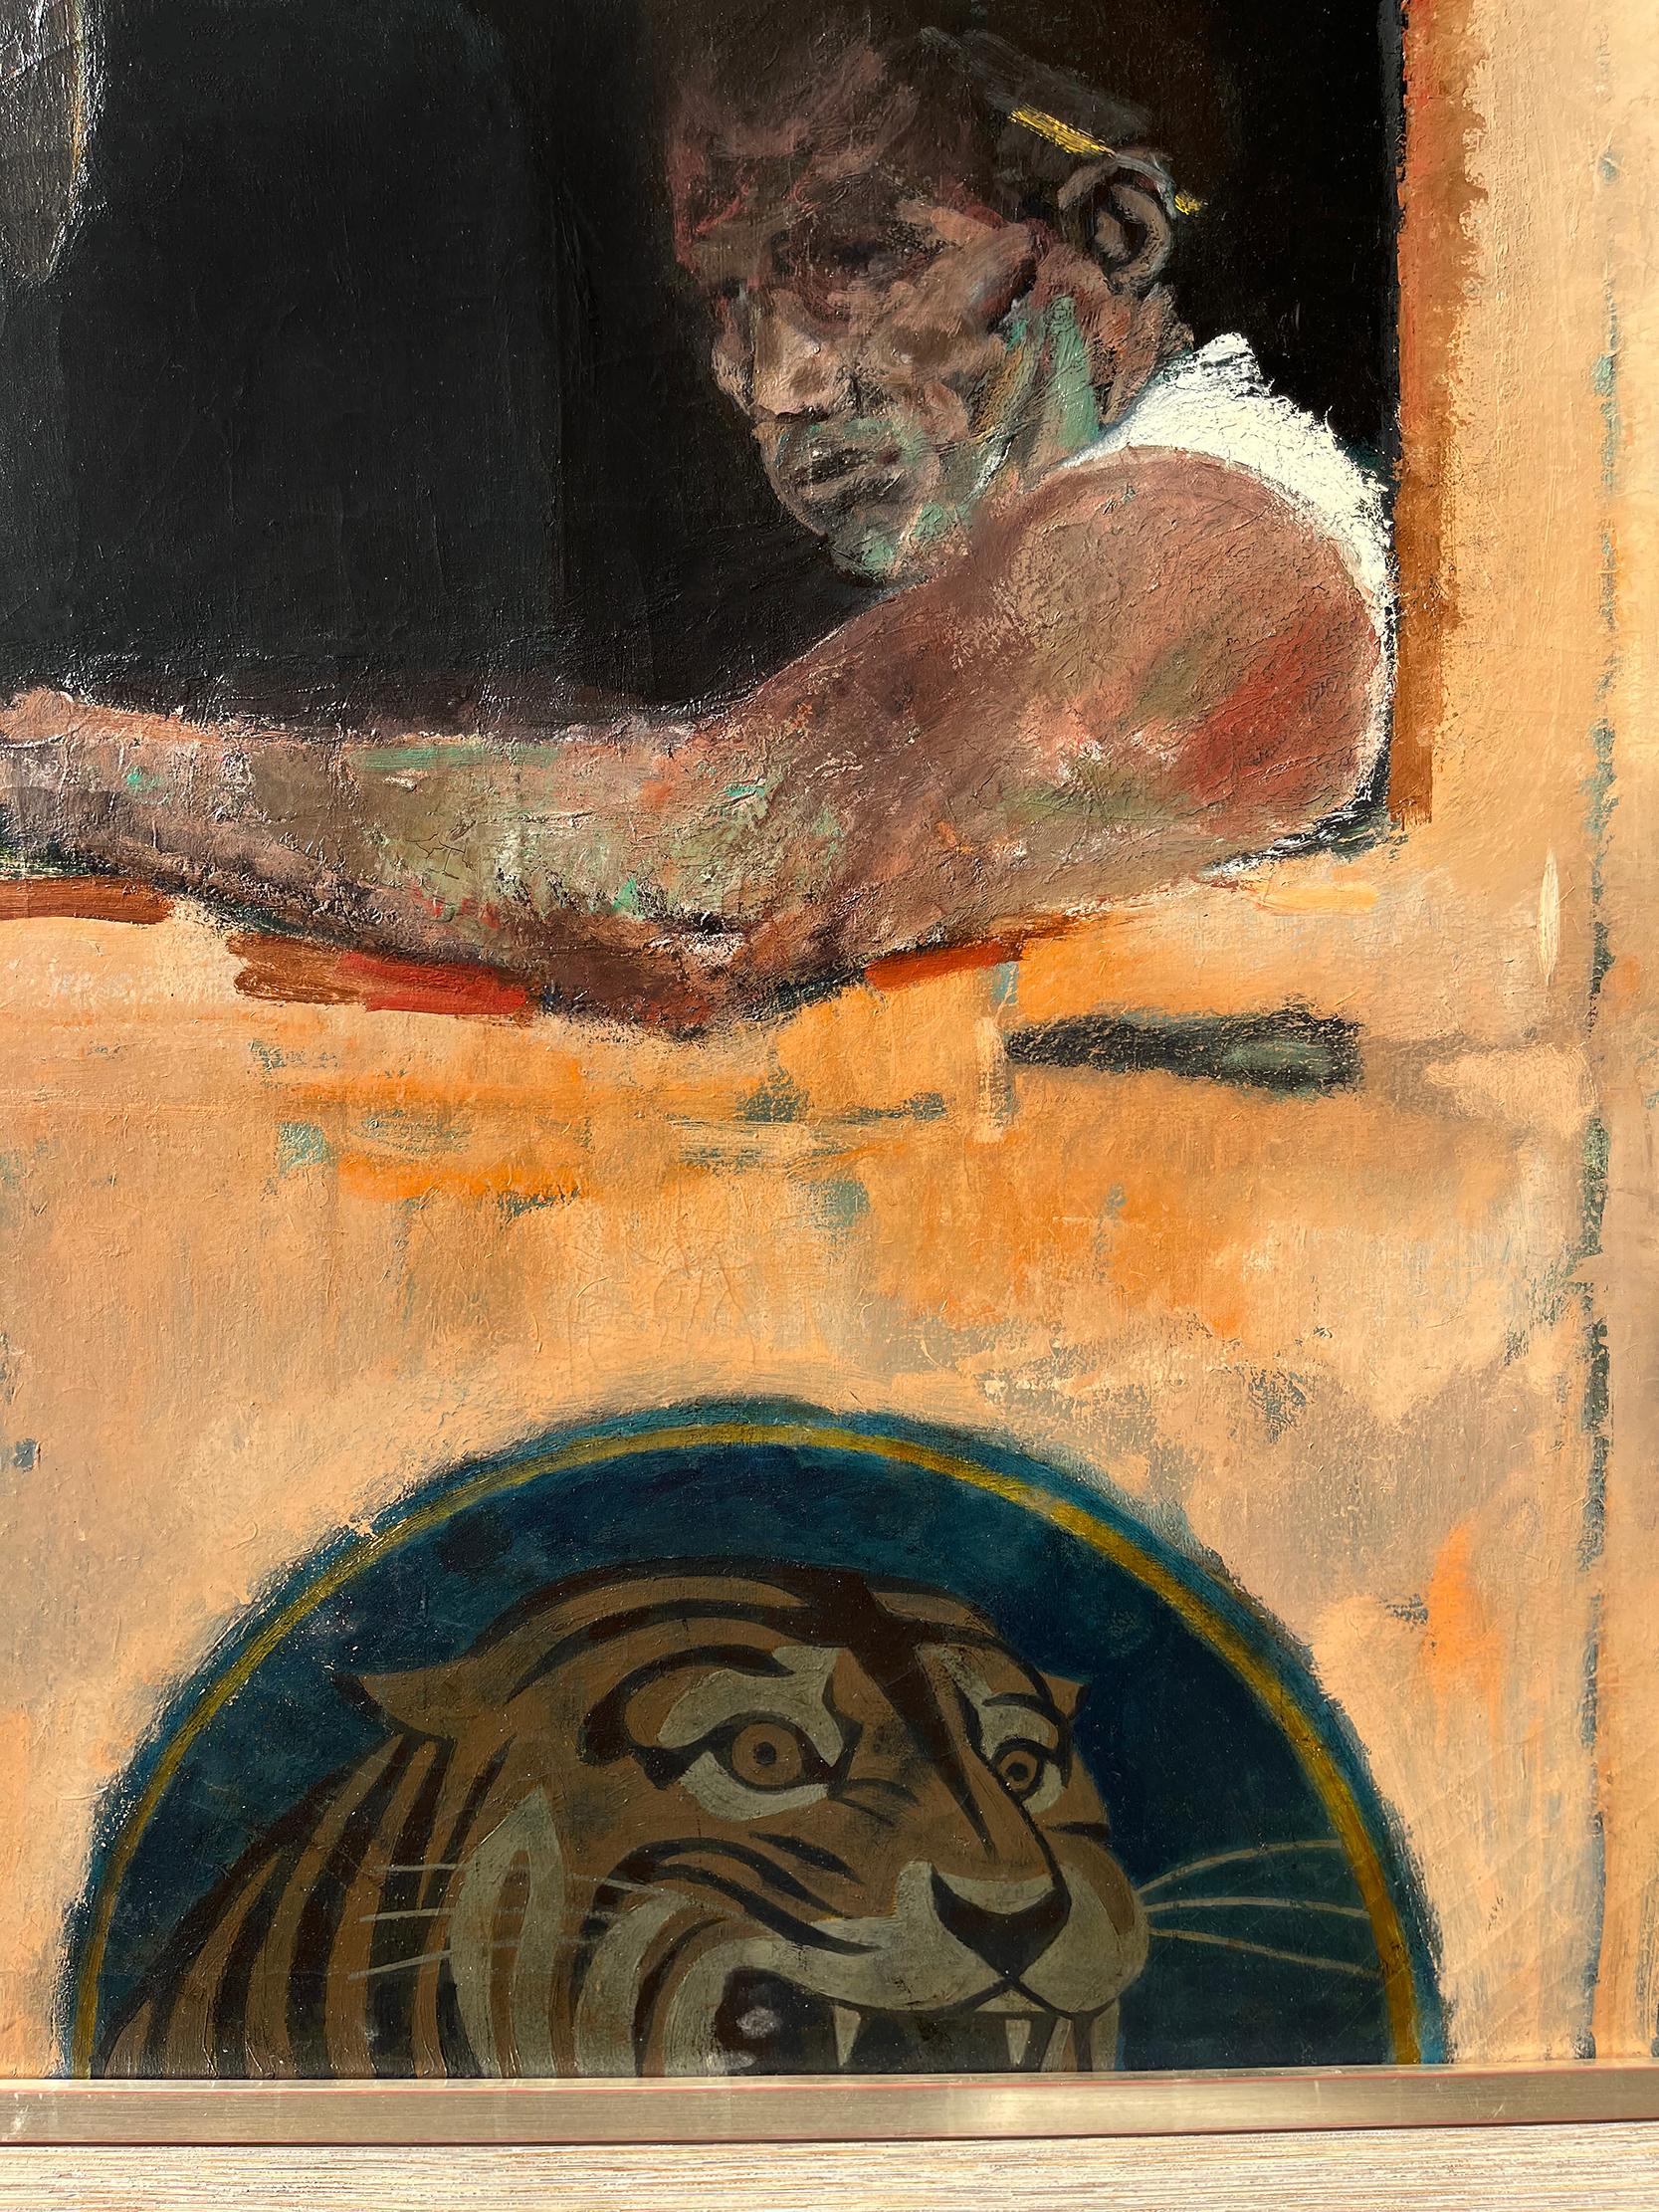 Collier bleu « Gritty Truck Driver with Tiger » (driver de camion avec un tigre - champ de couleurs rencontre le réalisme social)  - Painting de Joseph Hirsch